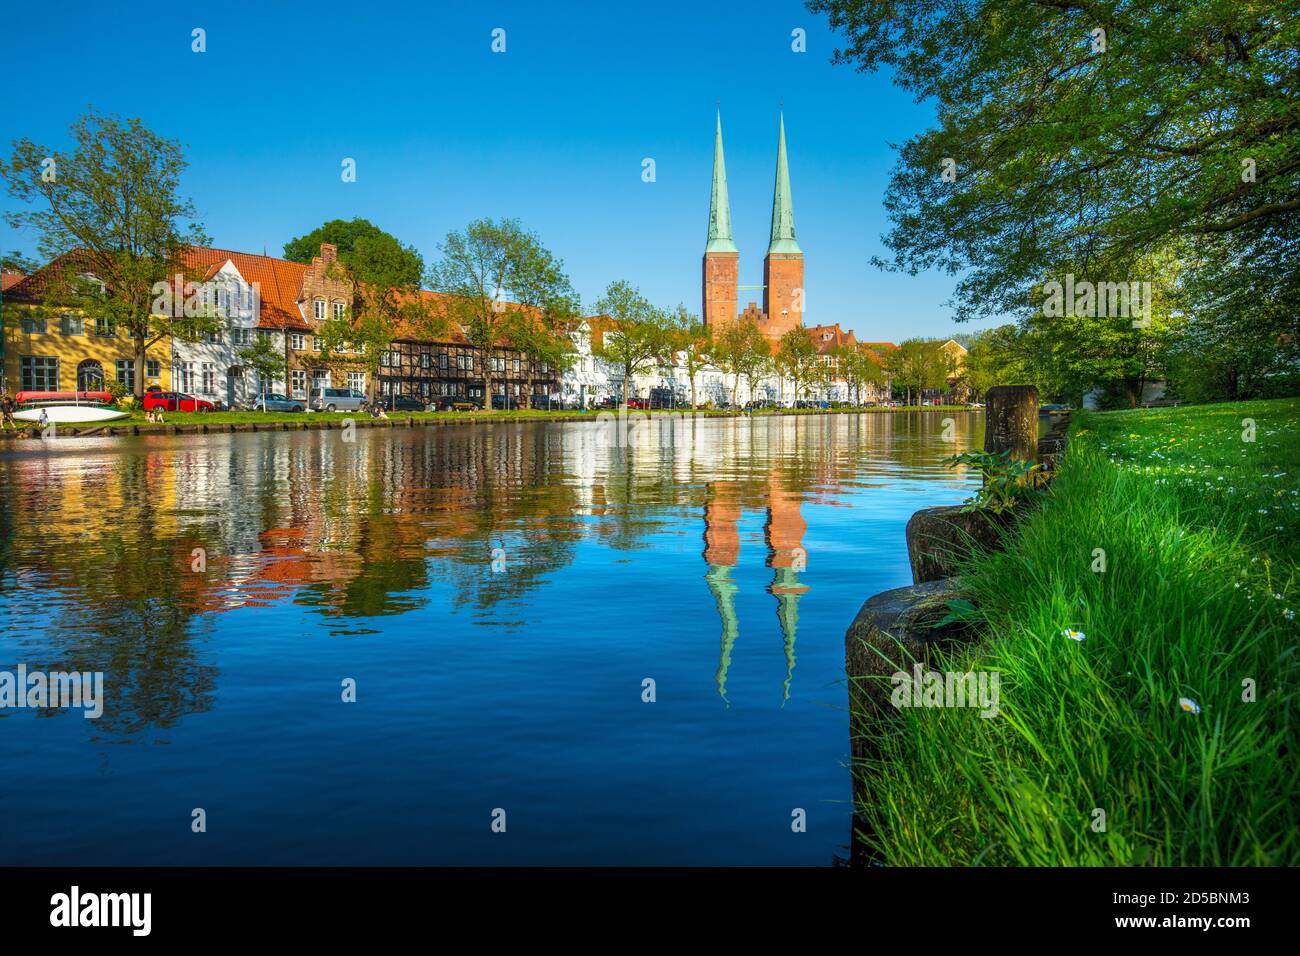 Deutschland, Schleswig-Holstein, Hansestadt Lübeck. Sommerabend auf dem Untertrave. Blick auf den Lübecker Dom. Foto Stock